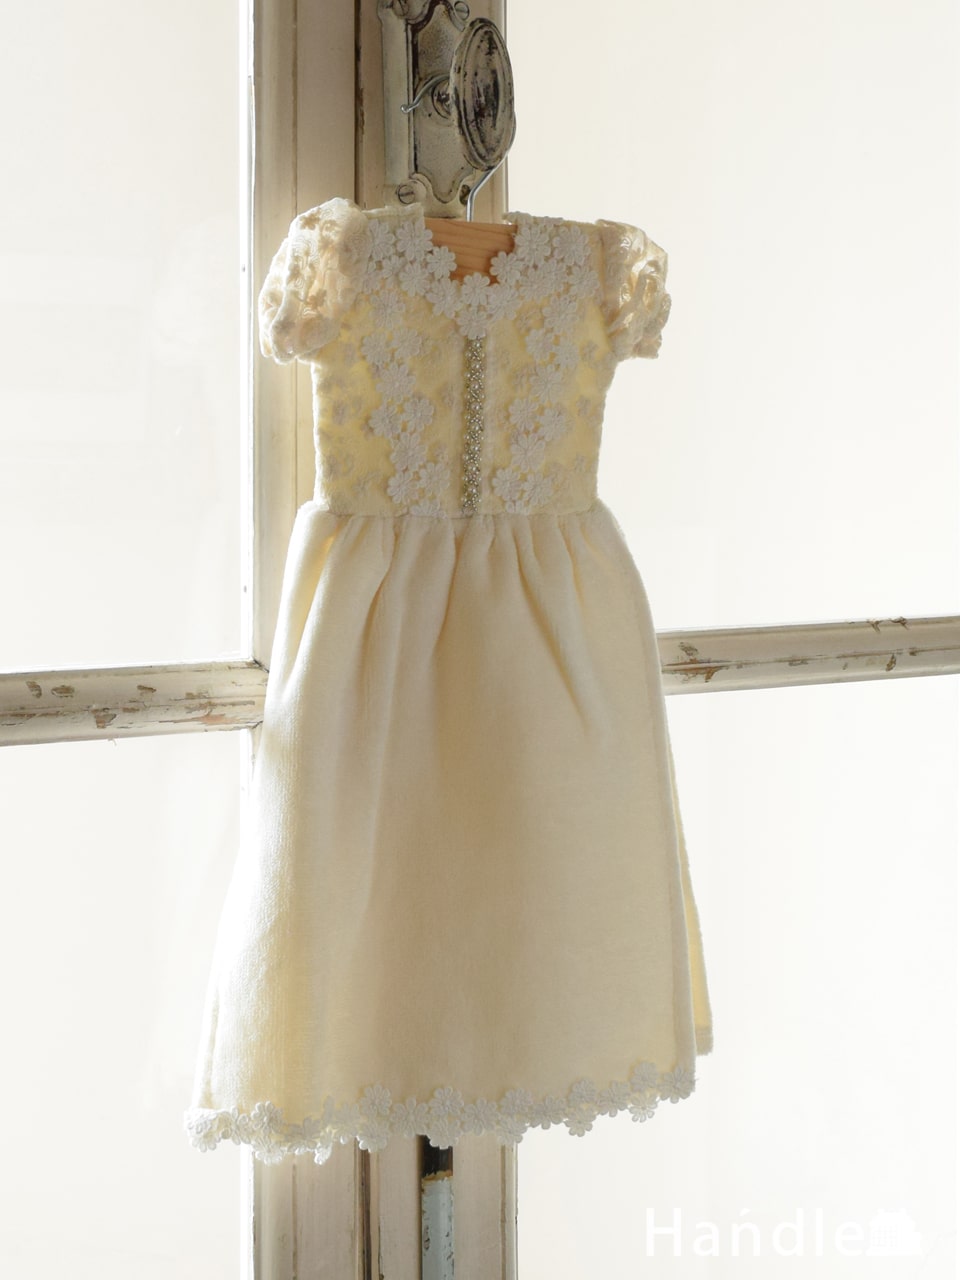 ドレスの形をした可愛いタオル、ハンガー付きのドレスタオル（cotton tulle） (n20-161)